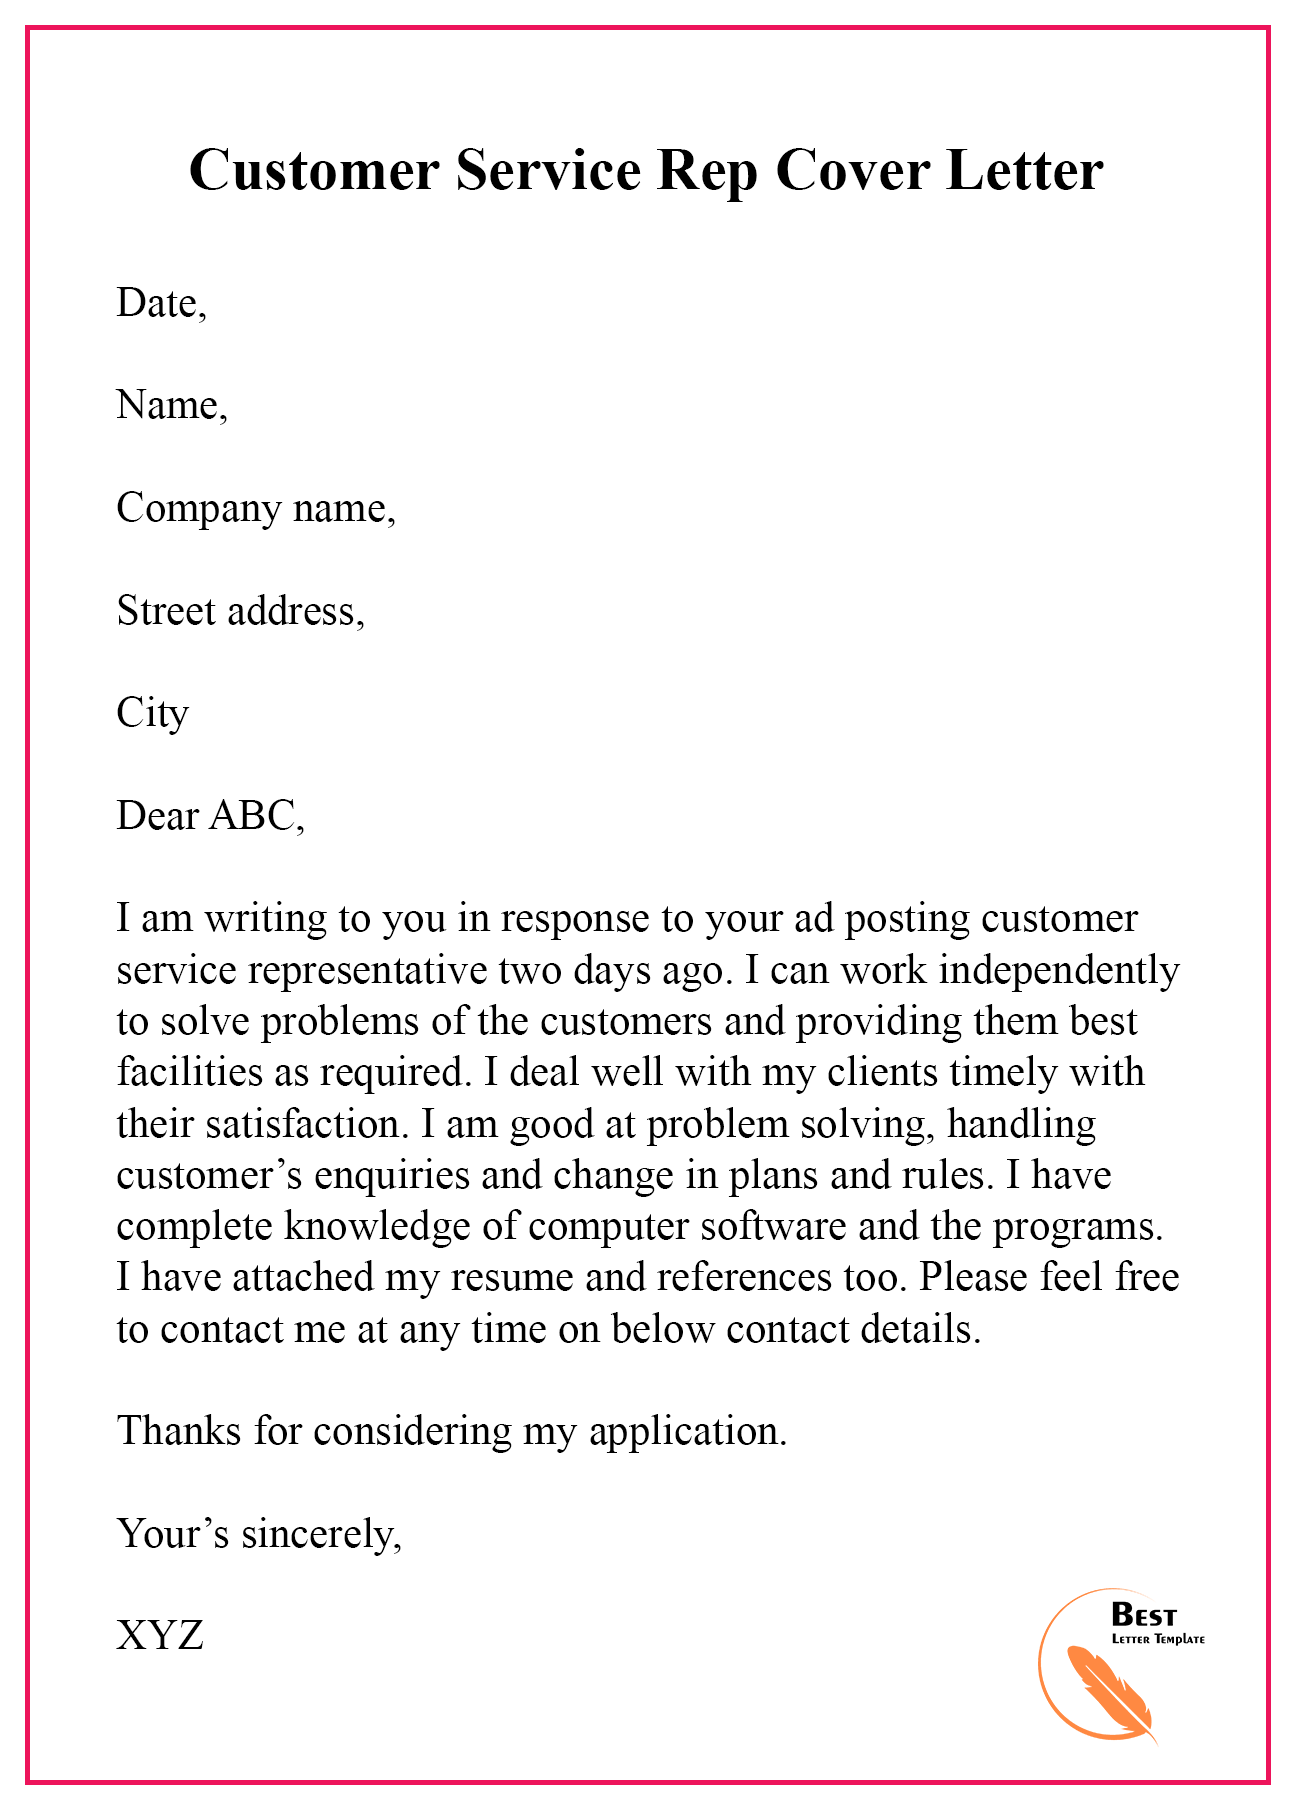 basic customer service cover letter